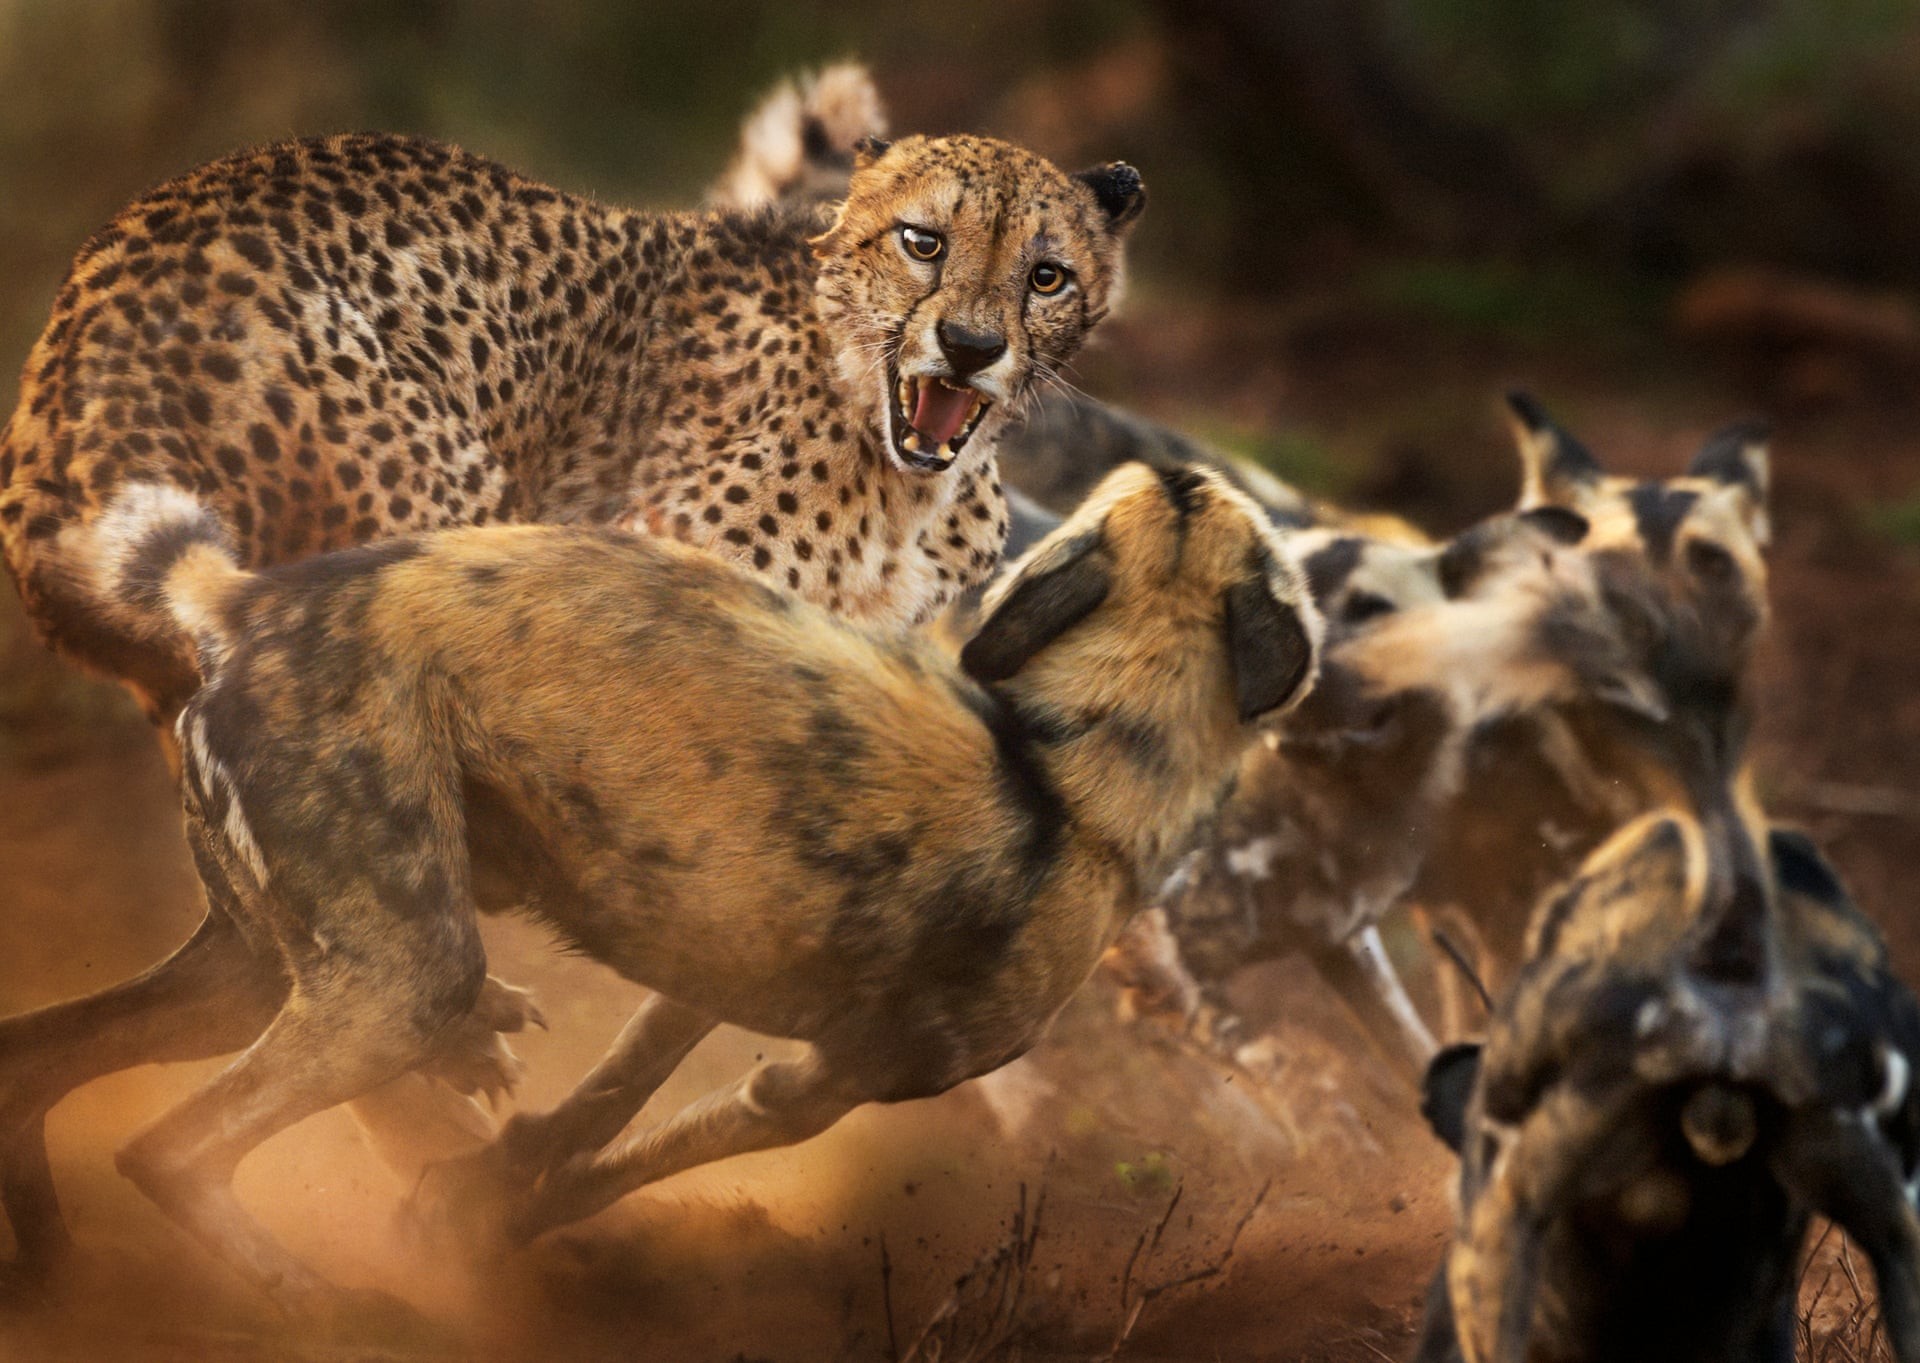 На одинокого самца гепарда нападает стая гиеновидных собак в частном заповеднике в провинции Квазулу-Натал, ЮАР. Автор фото Питер Хейгарт